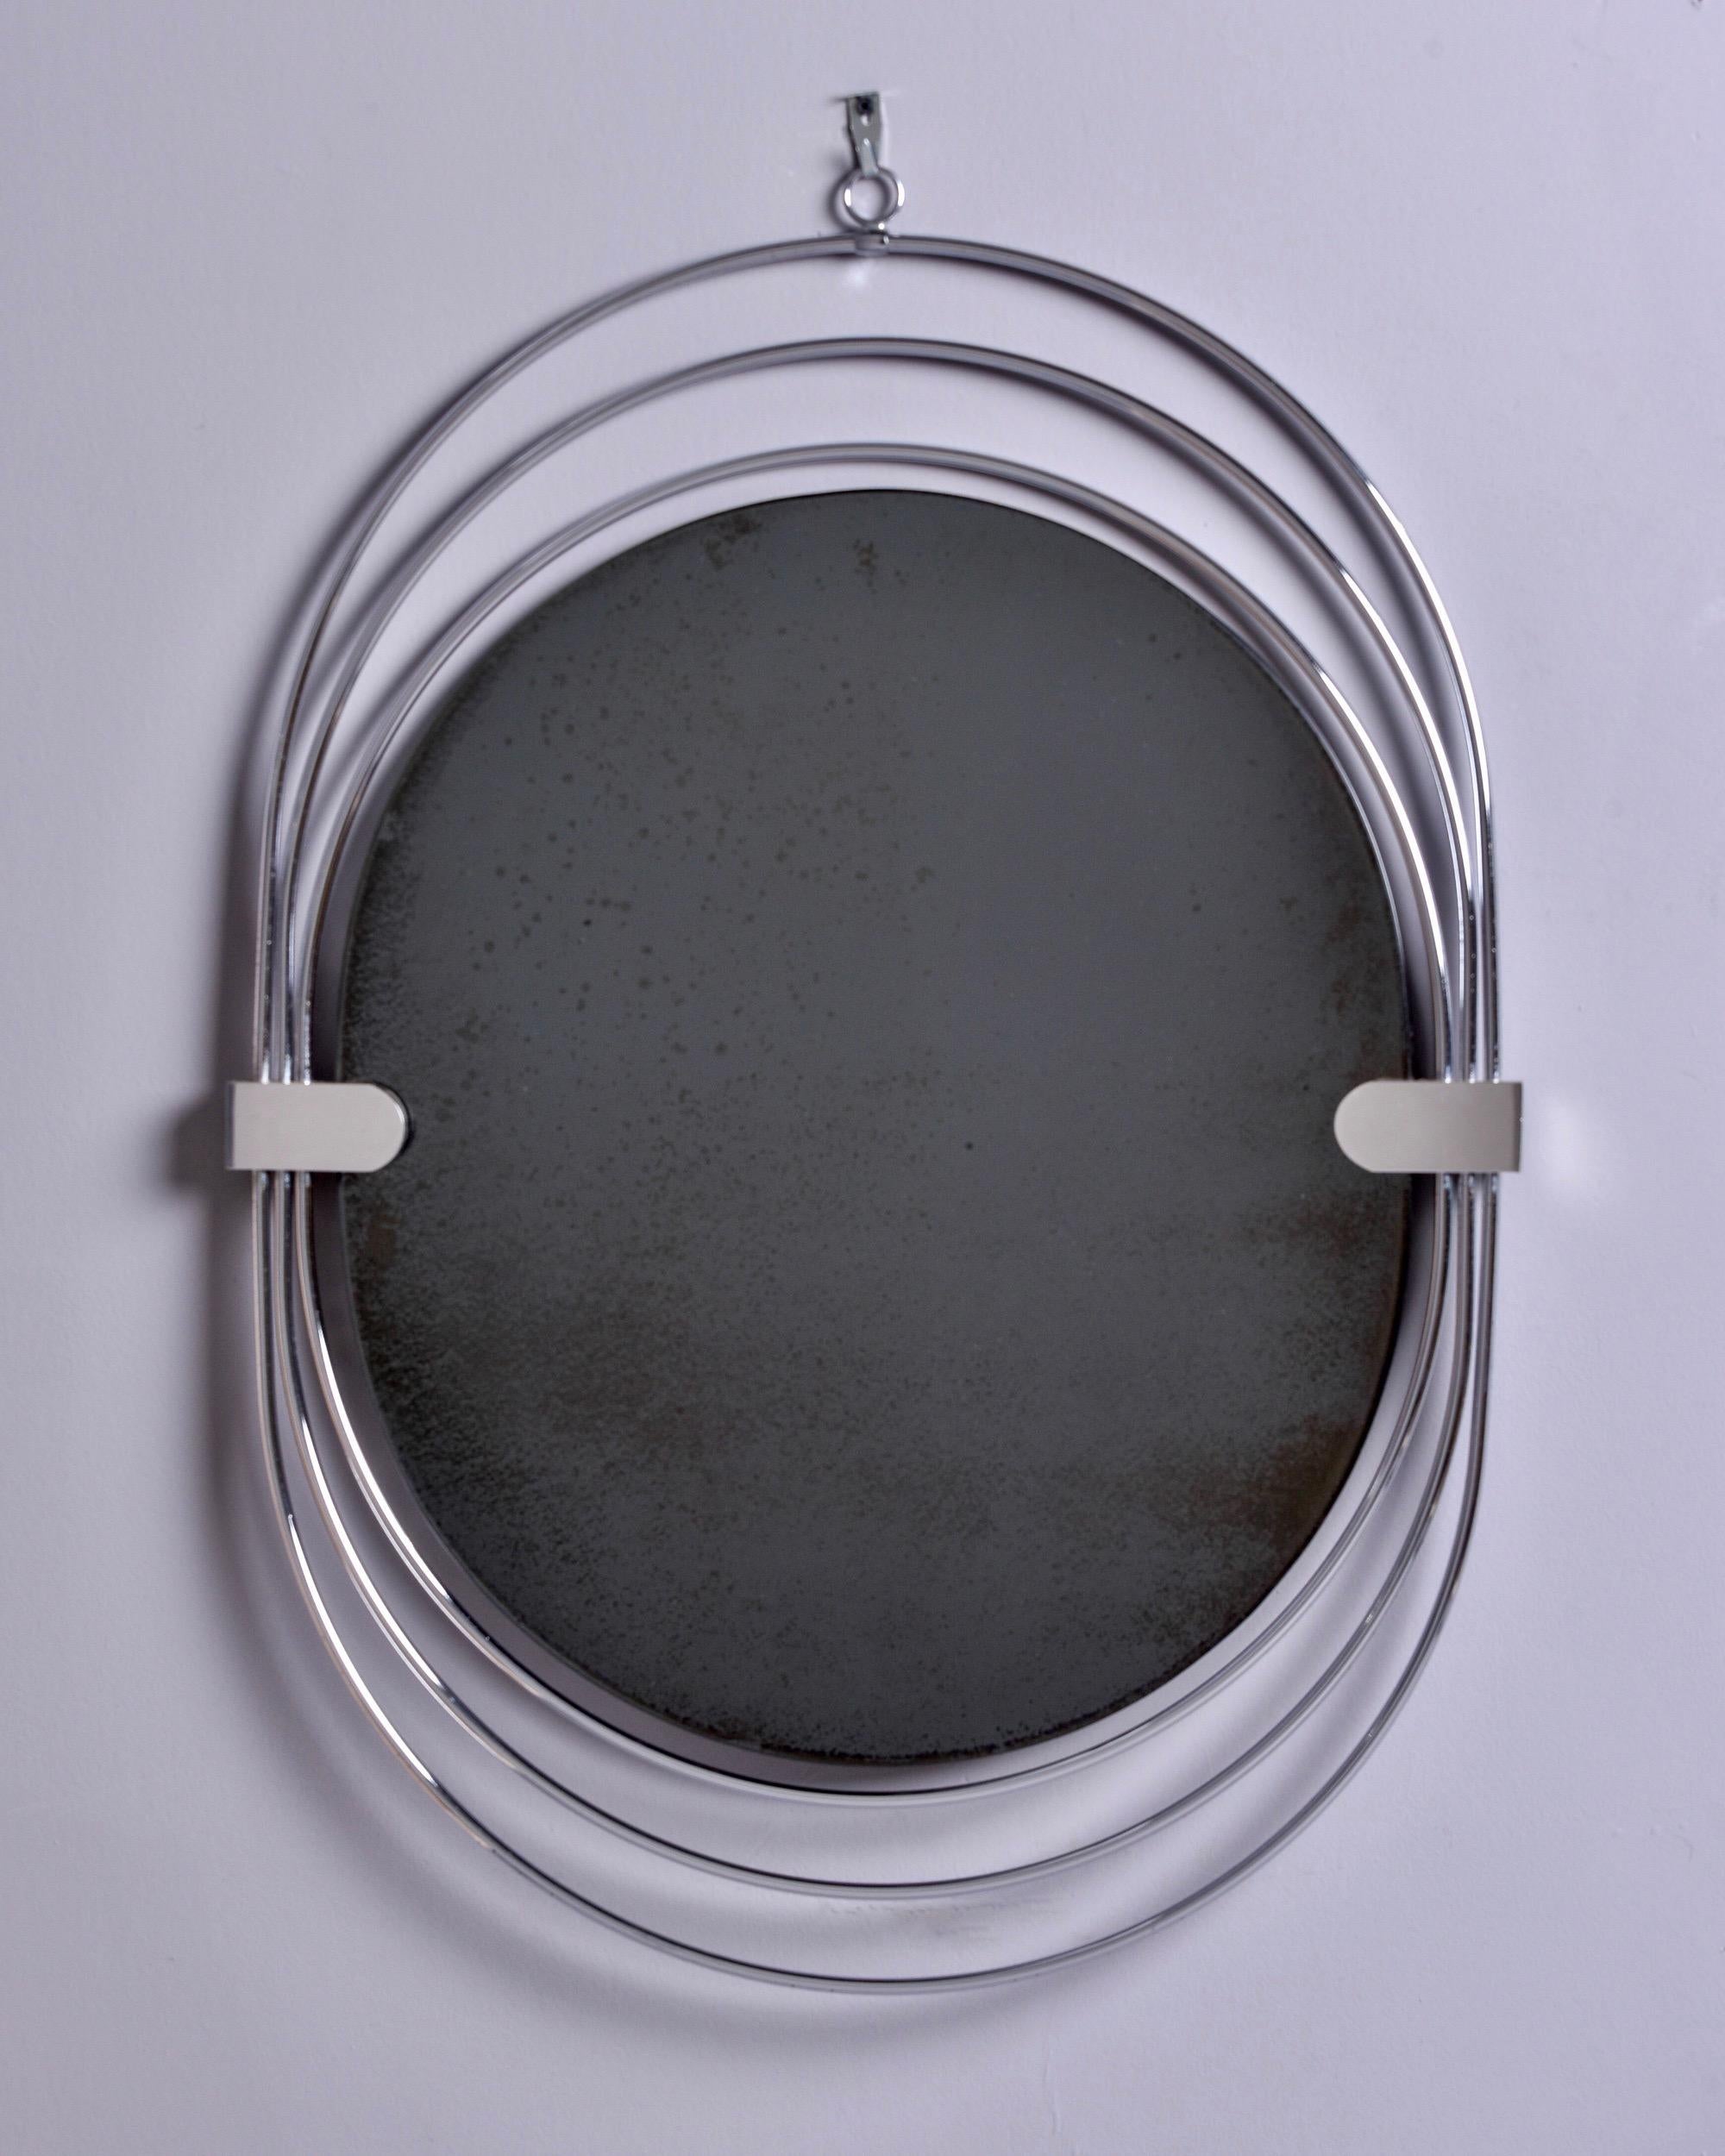 Trouvé en France, ce miroir ovale datant des années 1970 présente un cadre inhabituel composé de trois ovales chromés allongés réunis par des bandes sur les côtés et un anneau de suspension au sommet. Fabricant inconnu. Très bon état vintage.